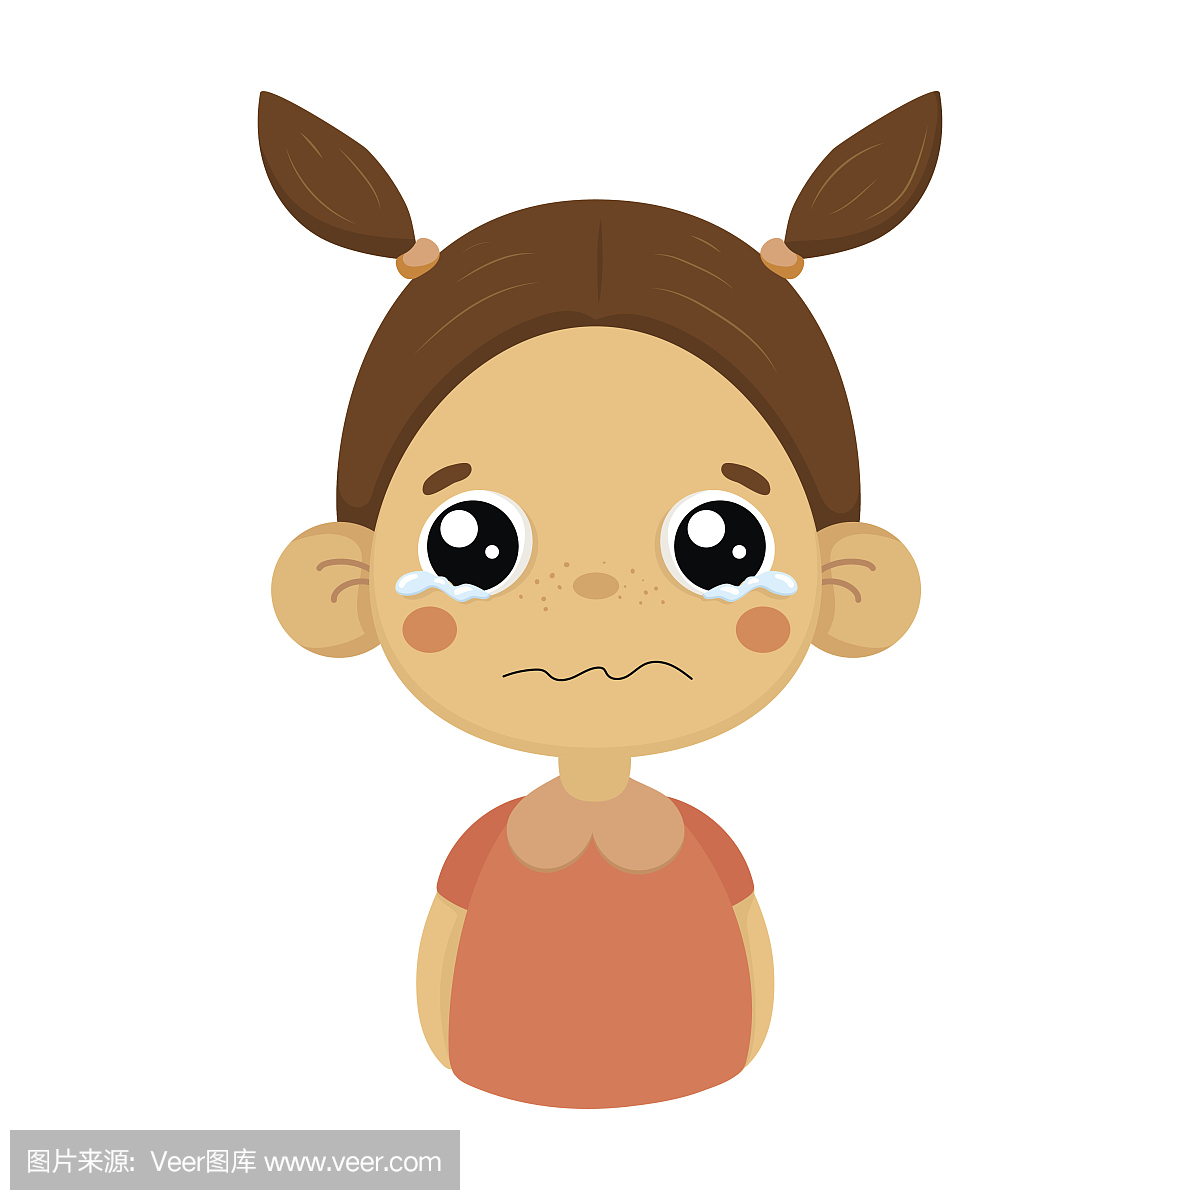 哭泣的小女孩平坦的卡通肖像表情符号与情感面